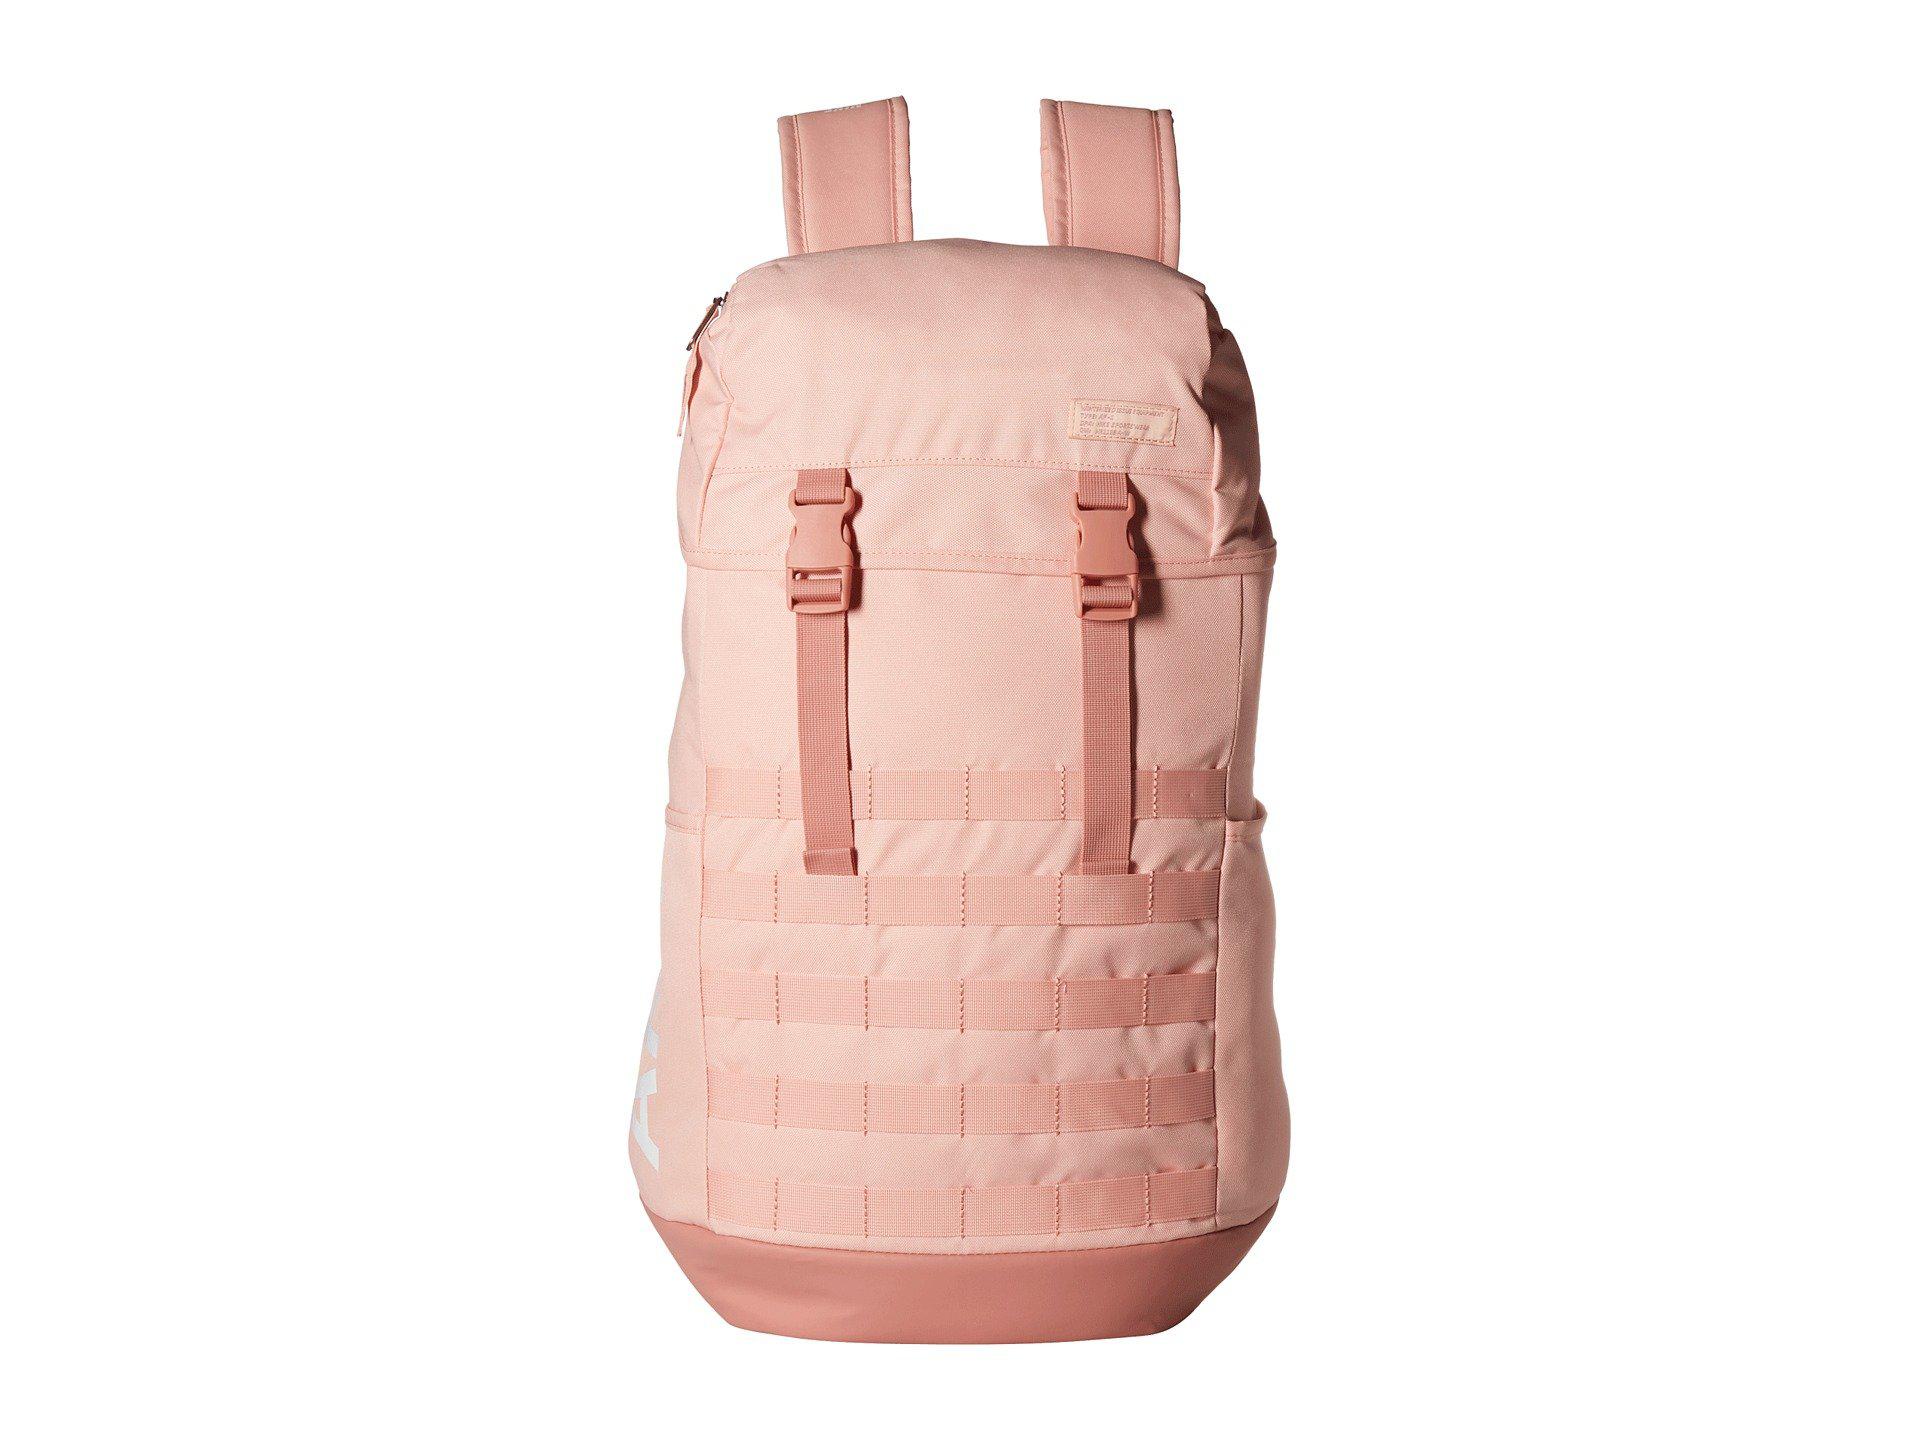 nike af1 backpack pink Off 55% - sirinscrochet.com